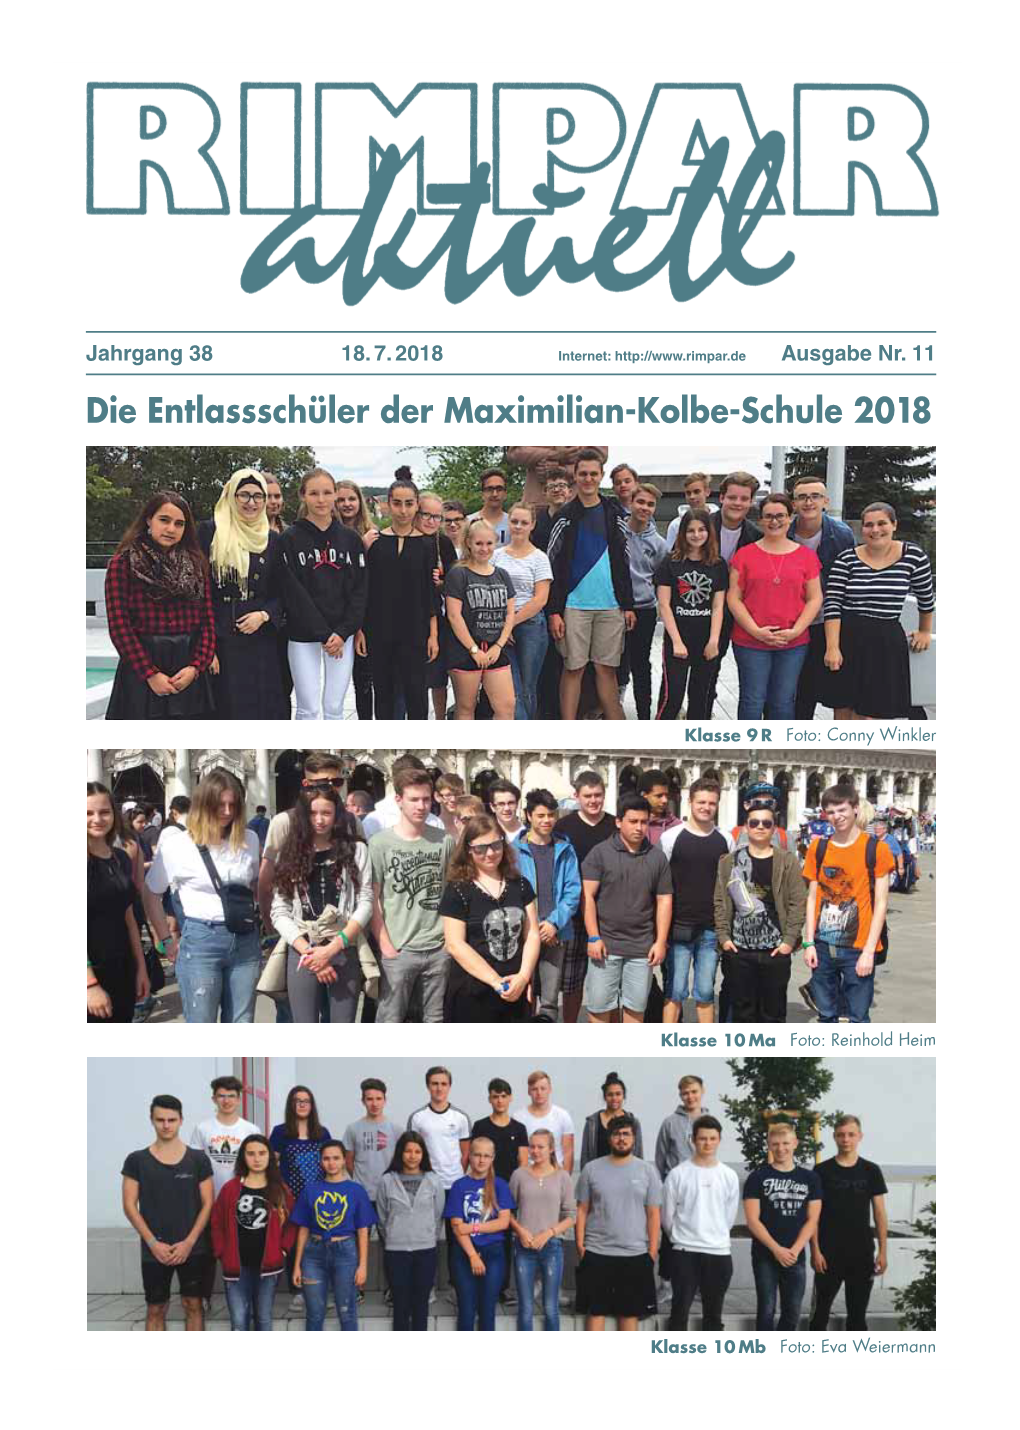 Die Entlassschüler Der Maximilian-Kolbe-Schule 2018